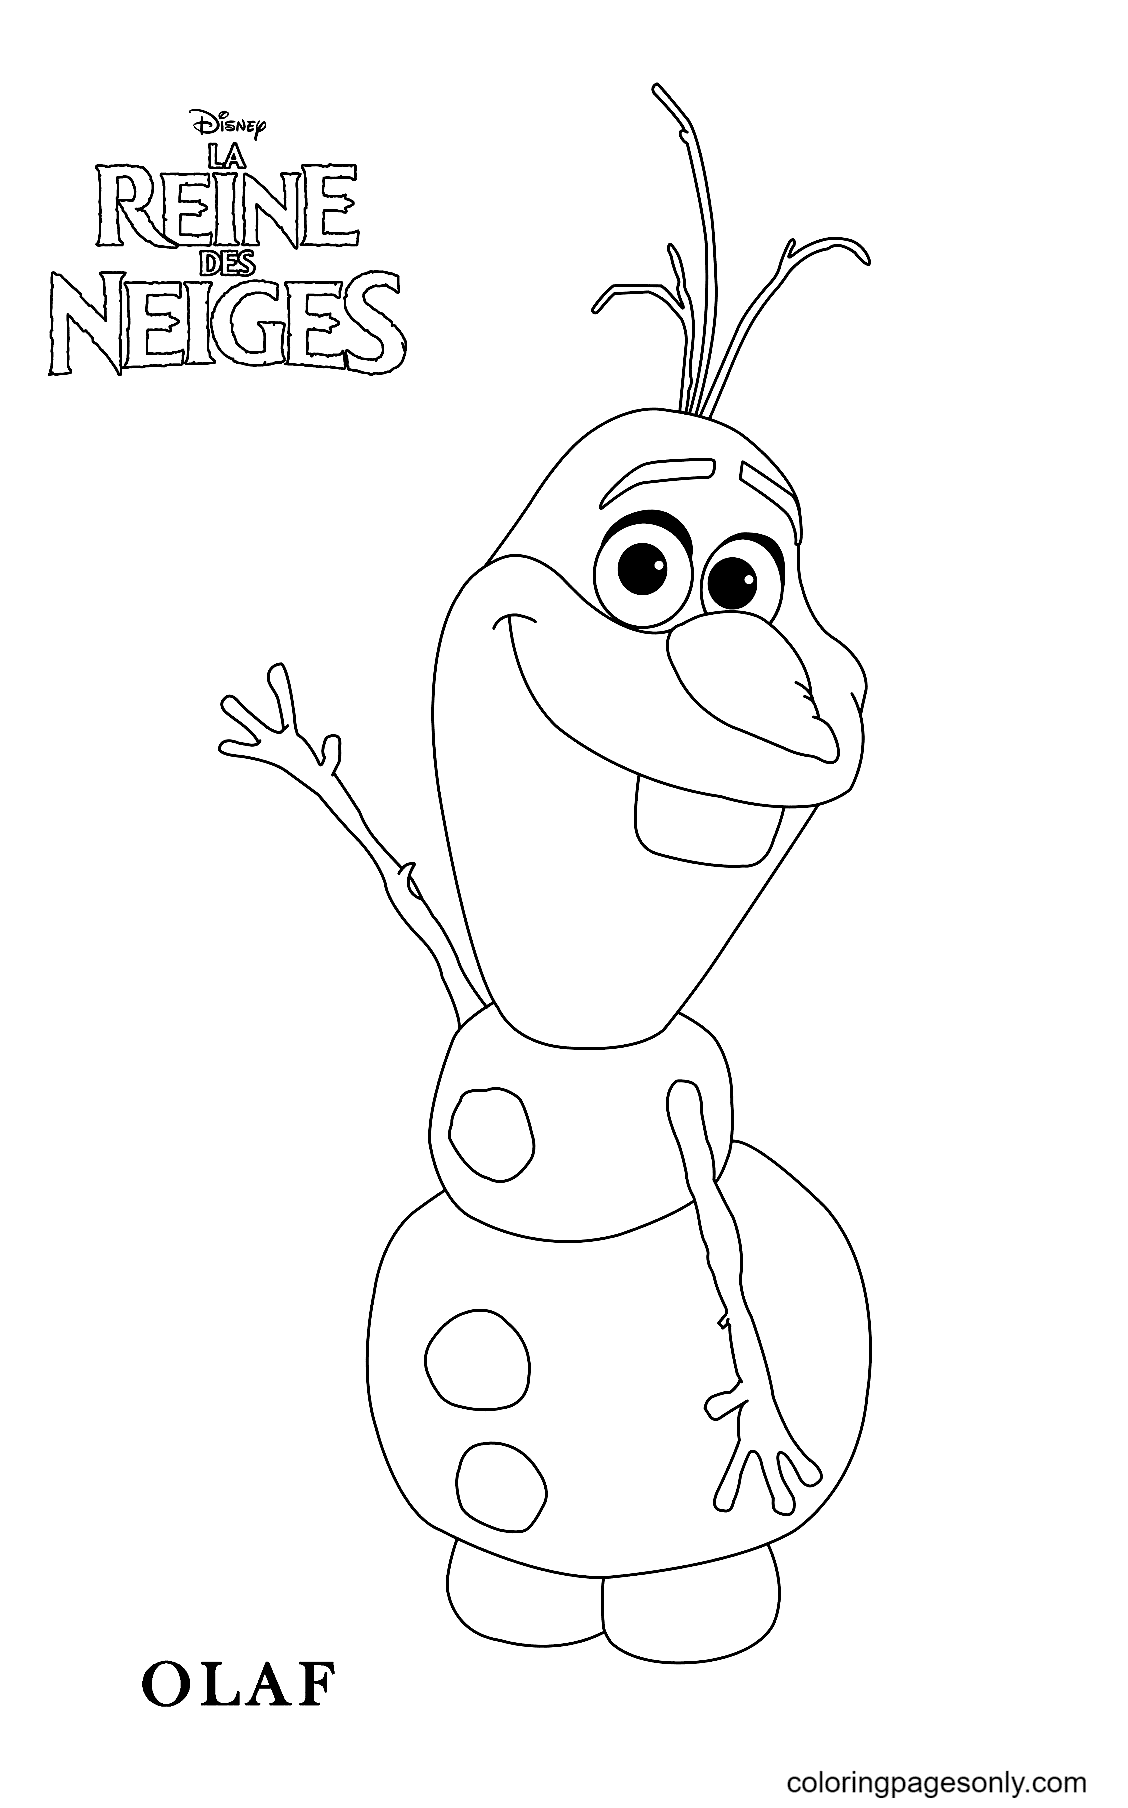 Freundlicher Olaf von Olaf